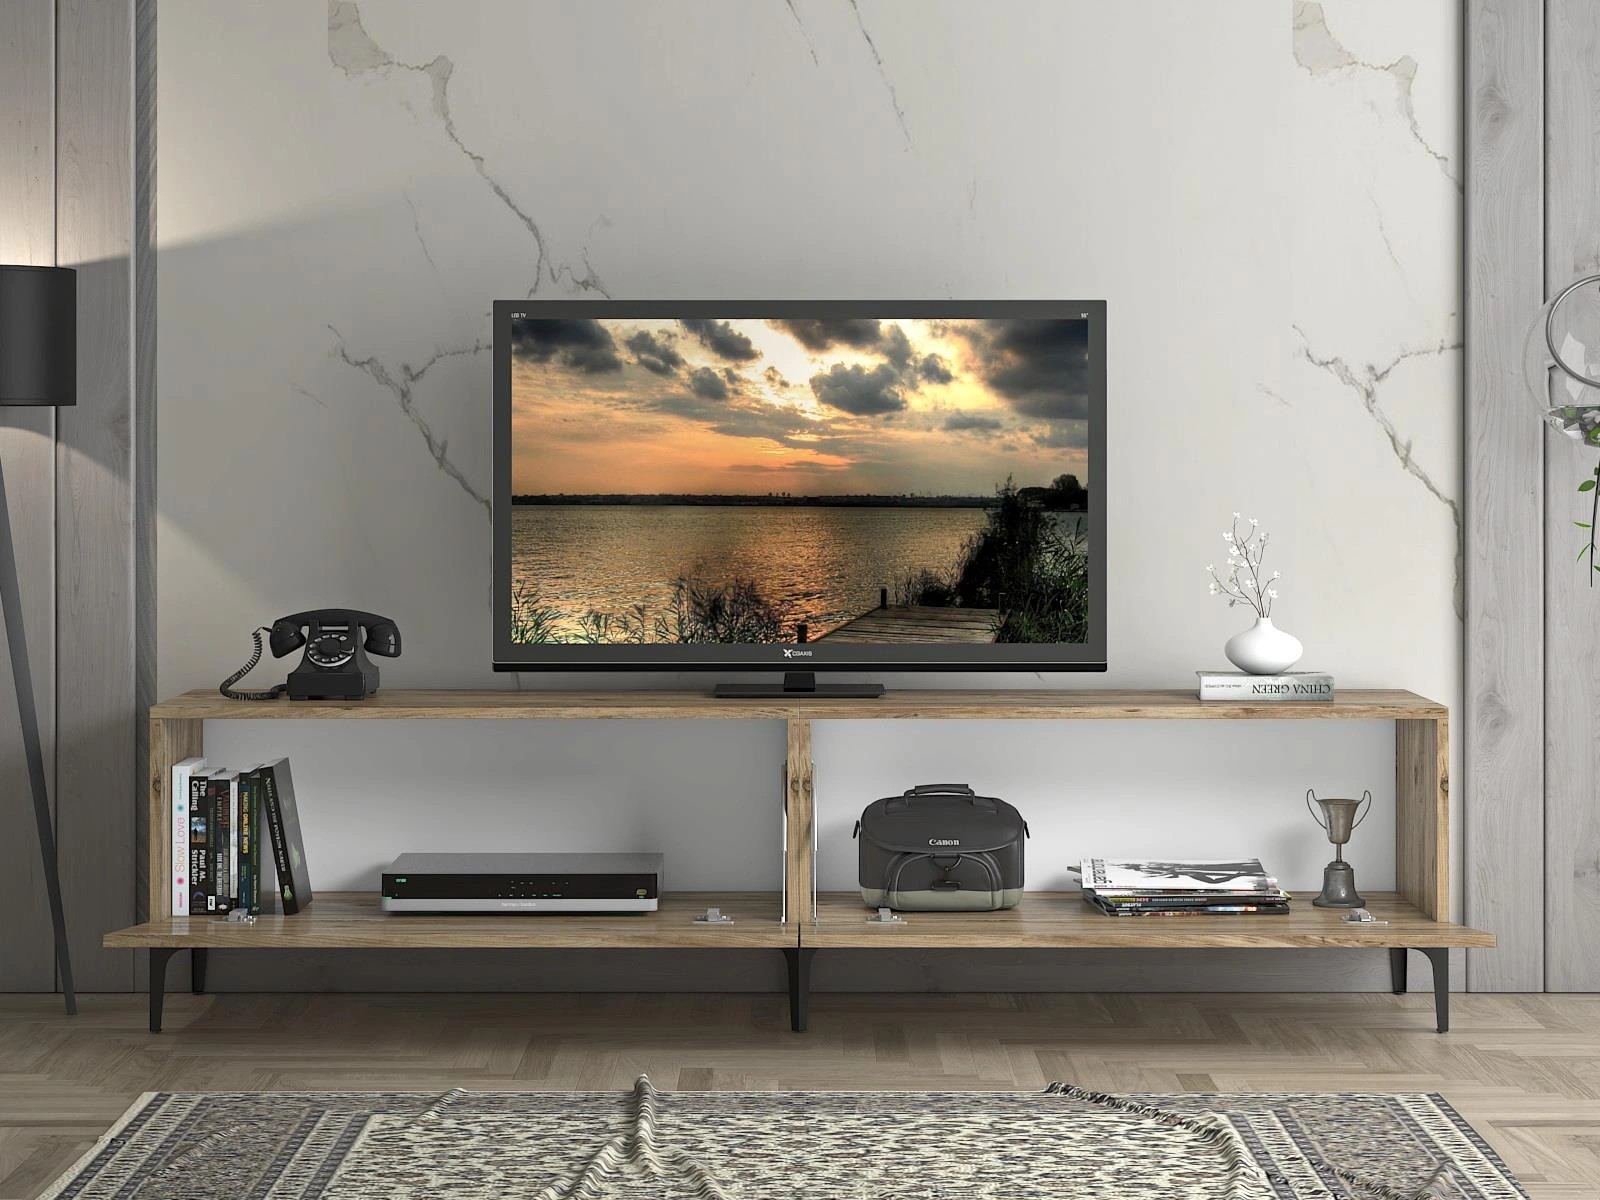 Wood'n Love Vega Premium 200 Cm Geniş Tv Ünitesi - Atlantik Çam / Siyah